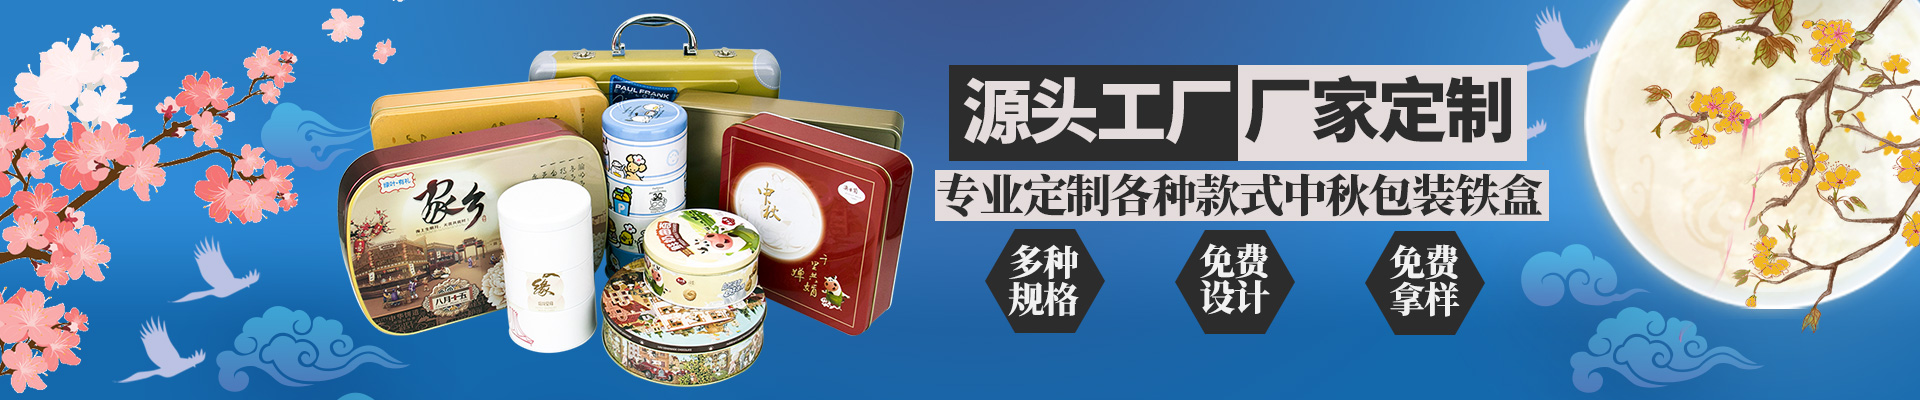 月饼铁盒月饼蓝鲸体育丨中国有限公司官网小横图